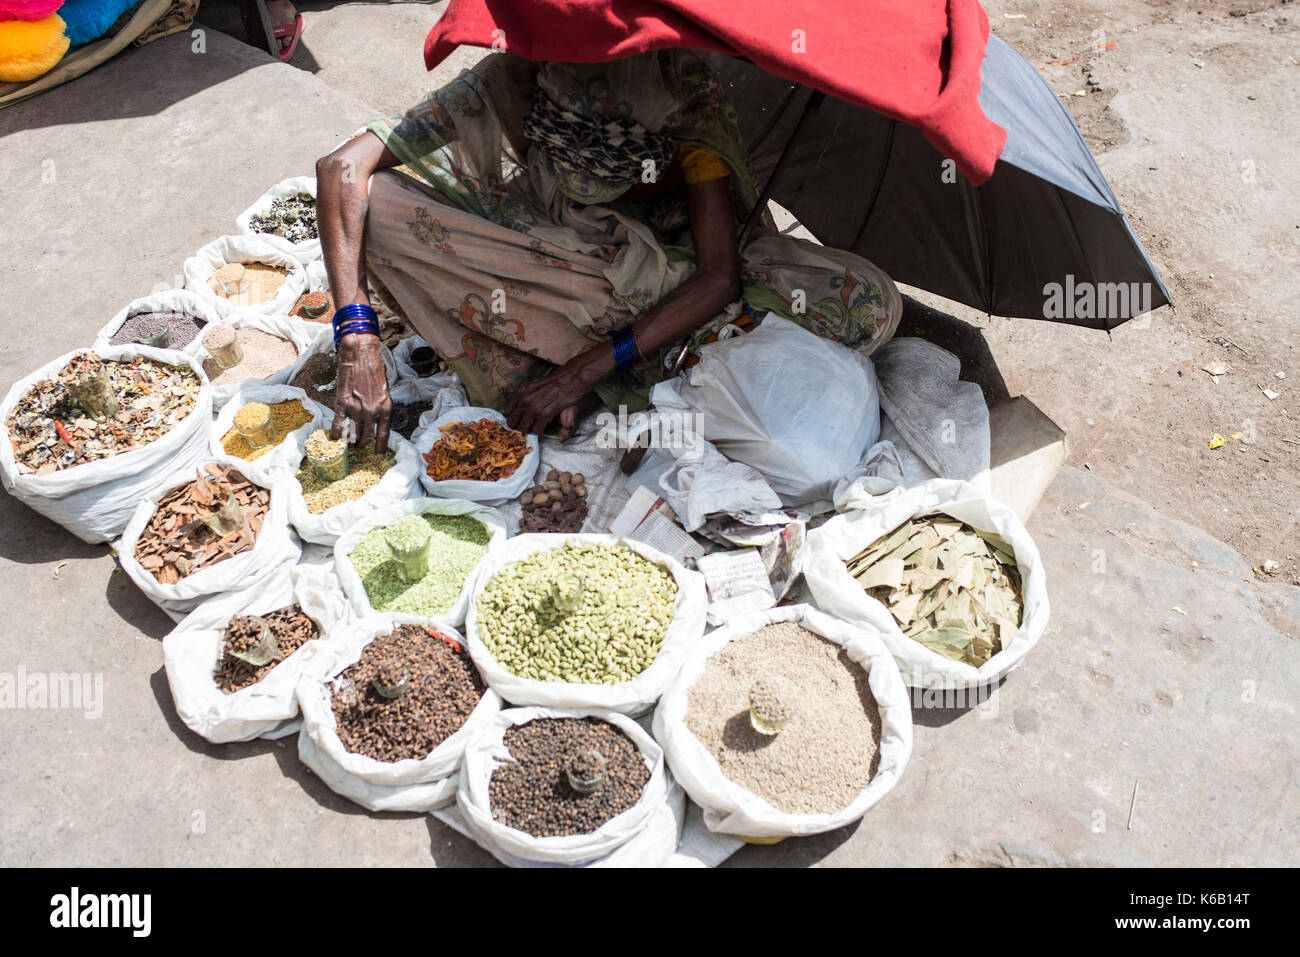 Indian spice vendor, Delhi Stock Photo